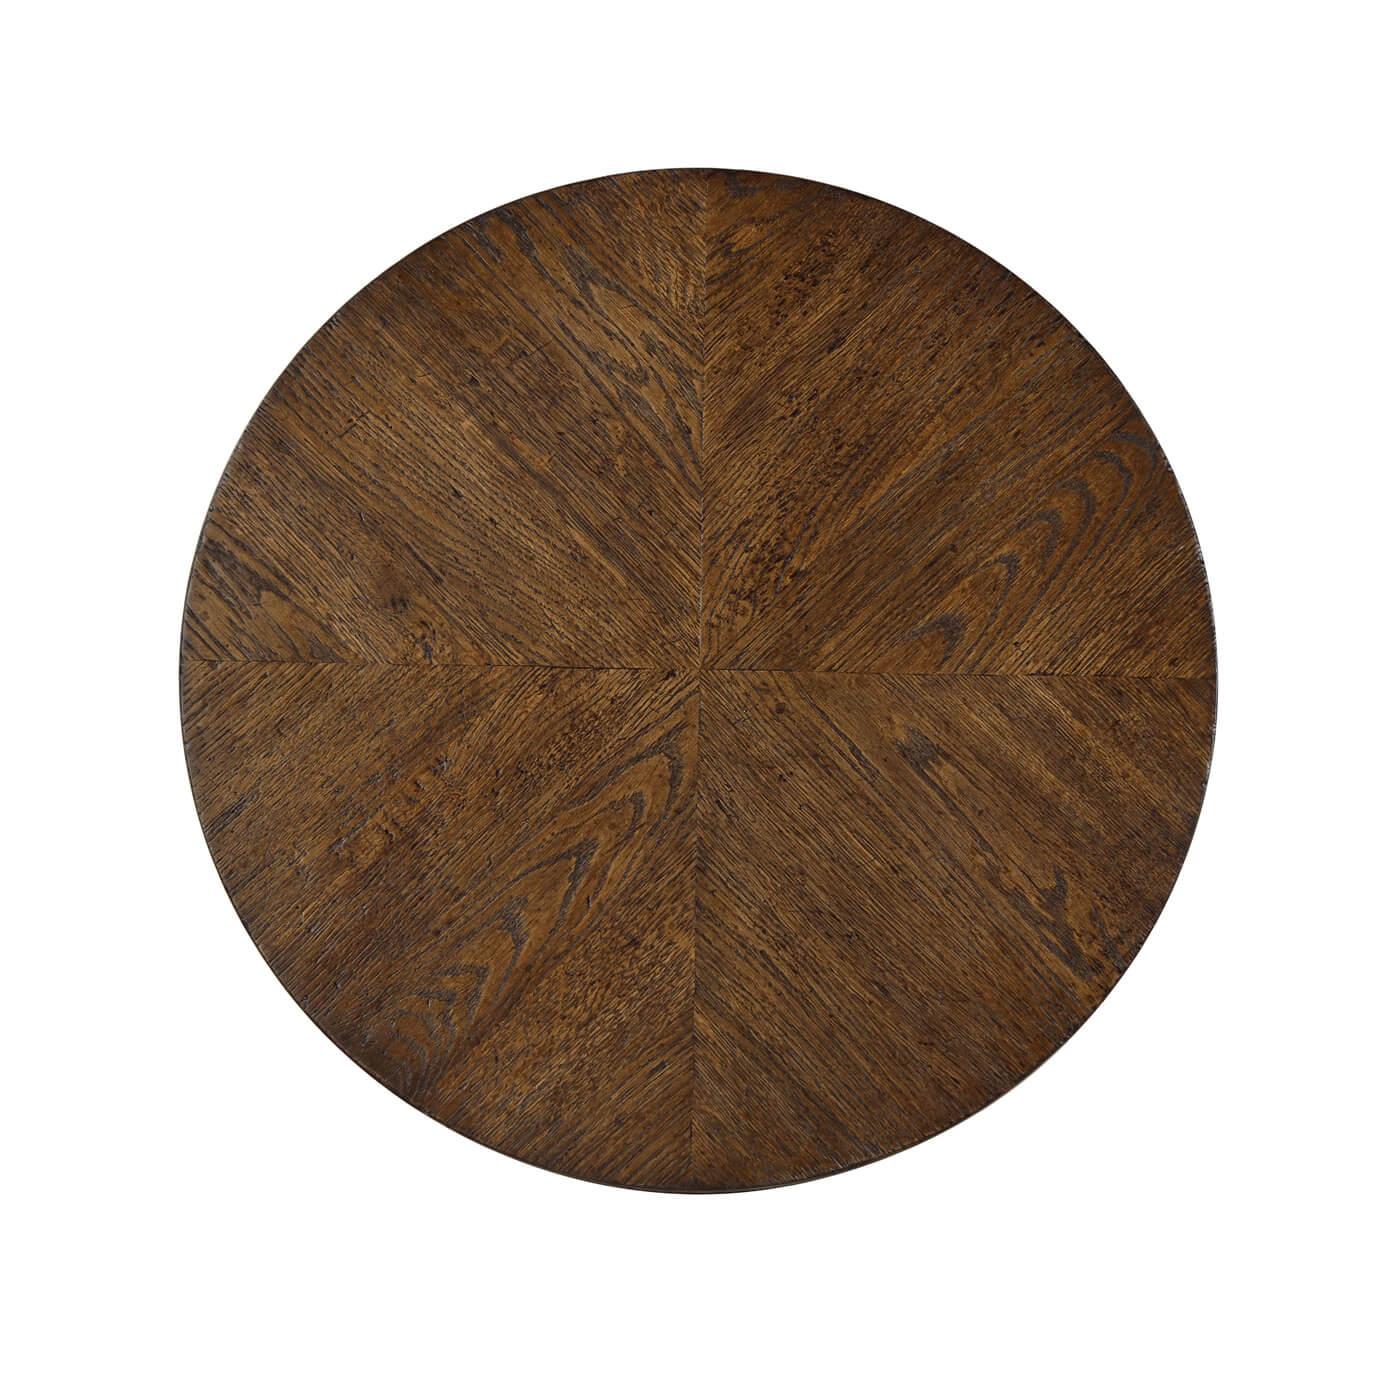 Une table d'appoint ronde moderne en chêne rustique avec un motif géométrique en chêne sur le plateau rond. Cette belle table est fabriquée avec un châssis en chêne à treillis plat et un pied en chêne conique.

Montré en finition